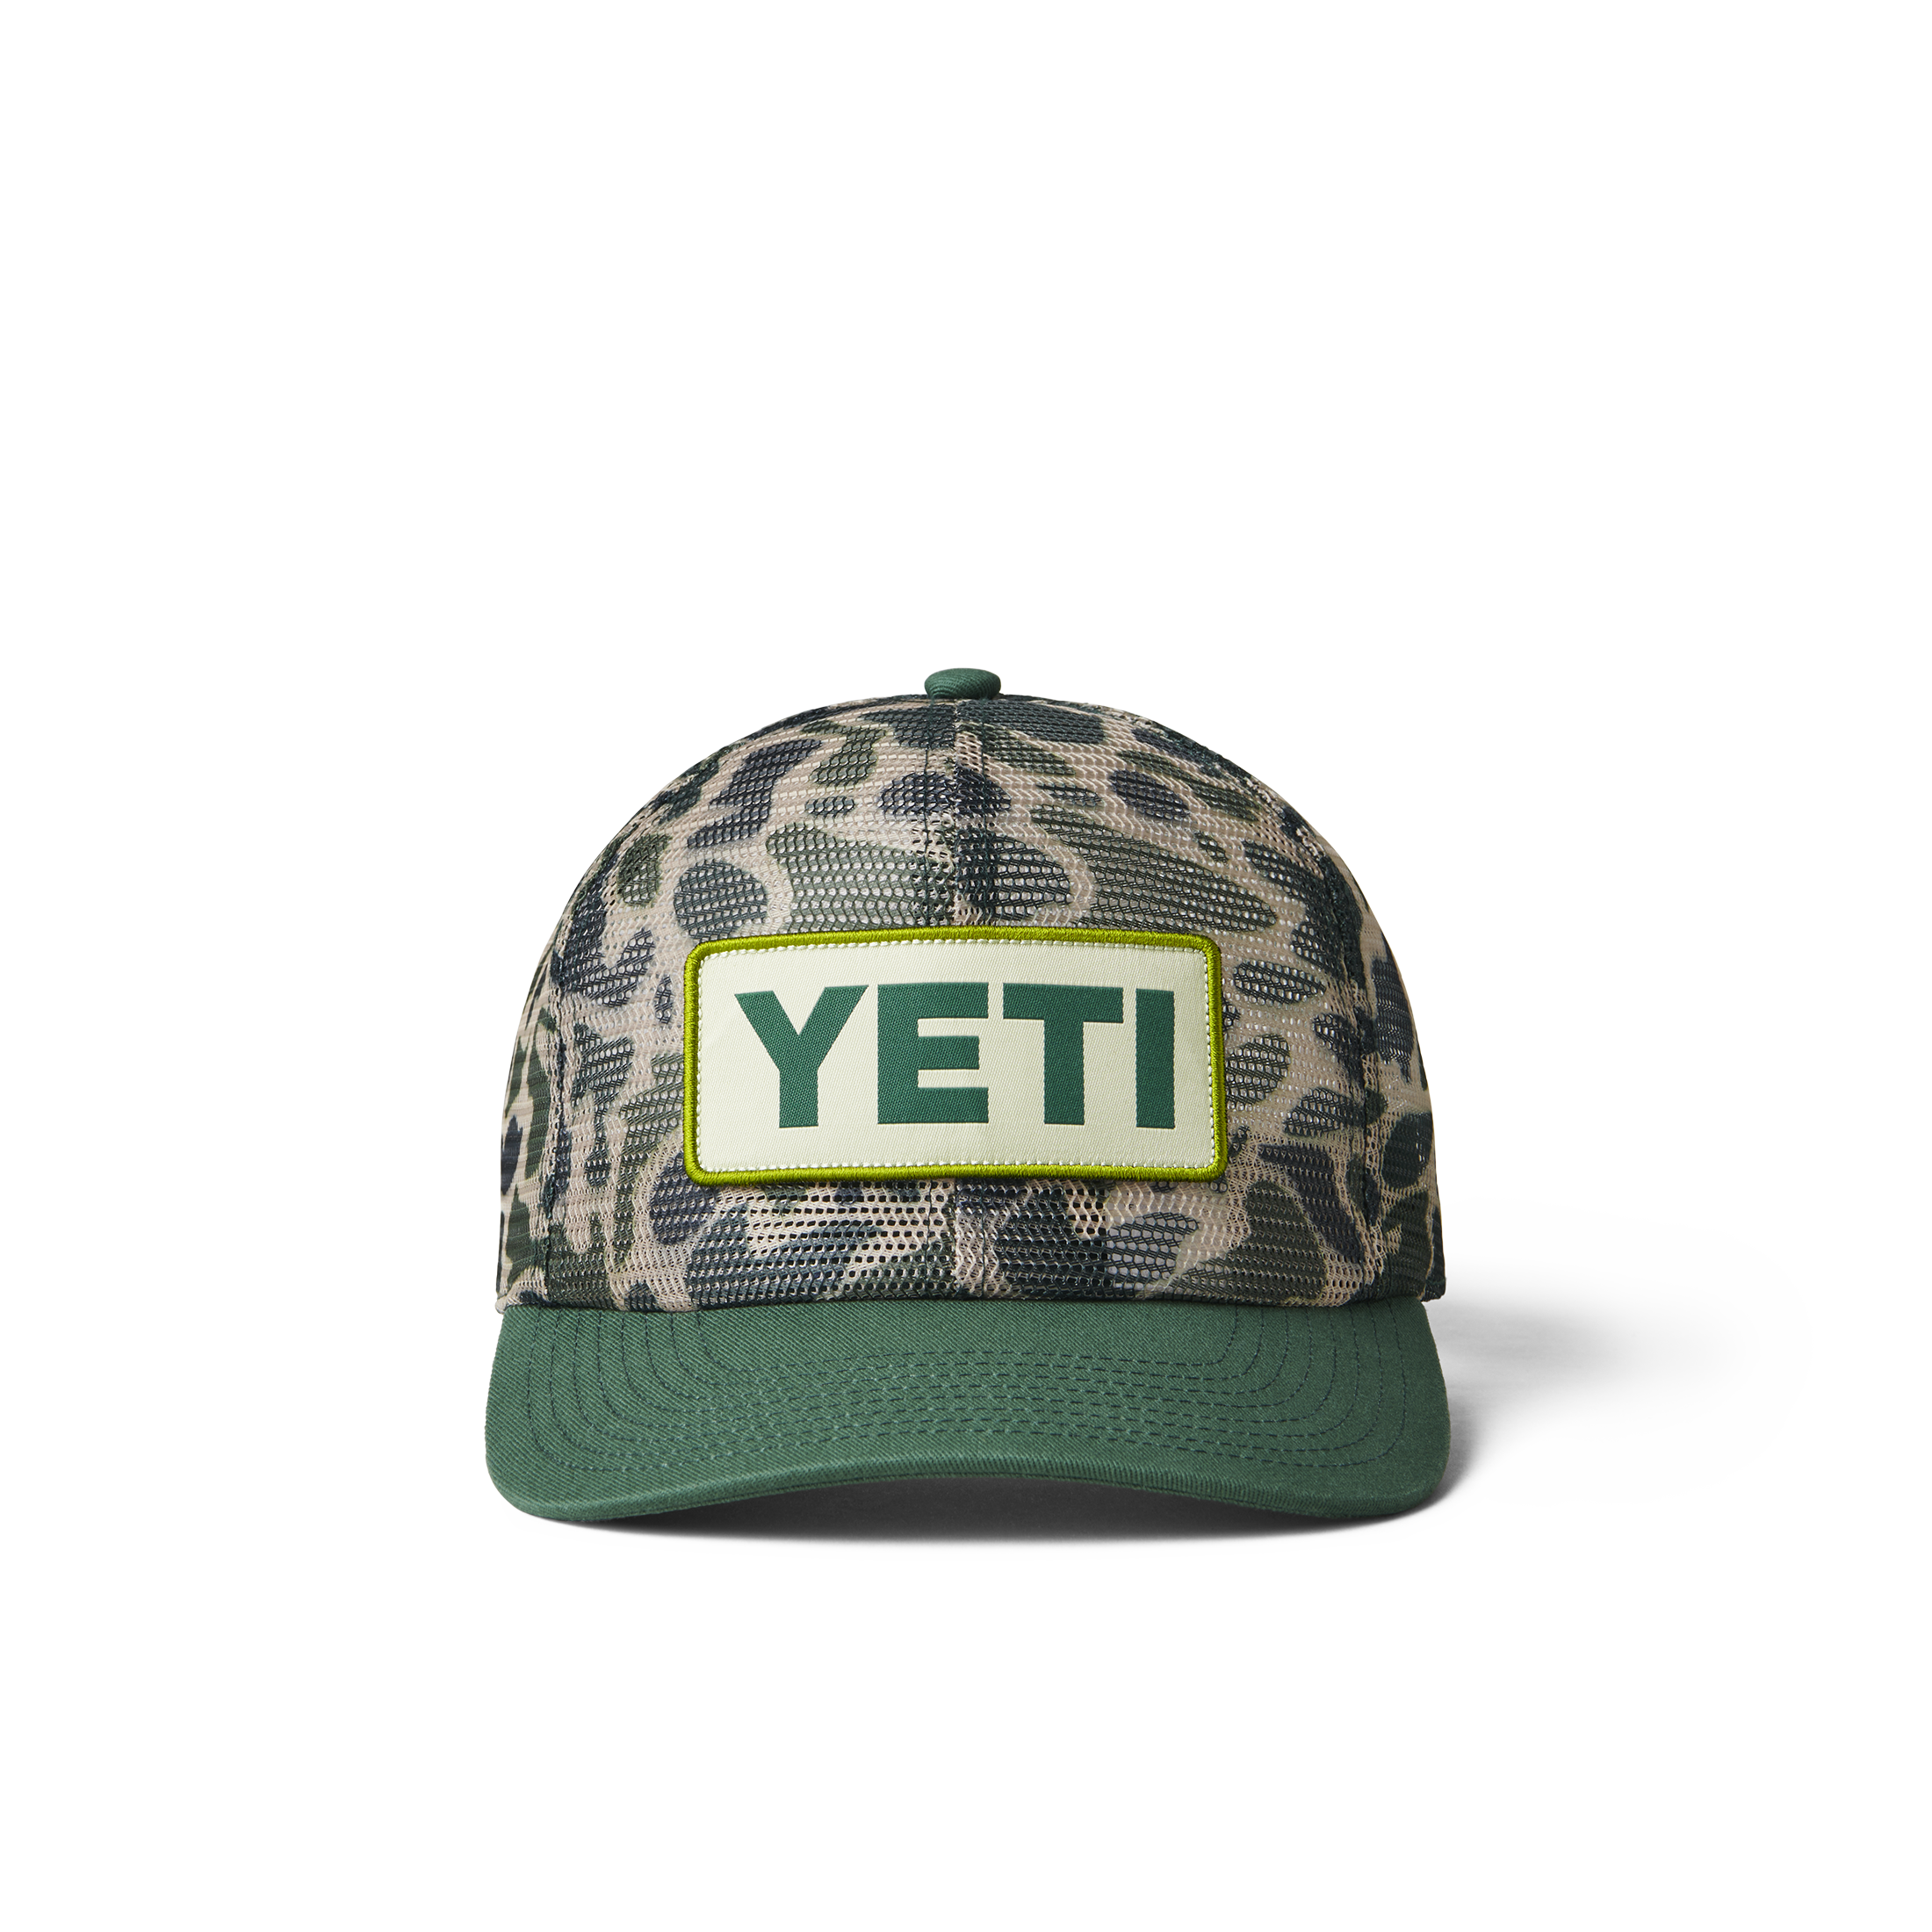 YETI Camo Mesh Hat Green